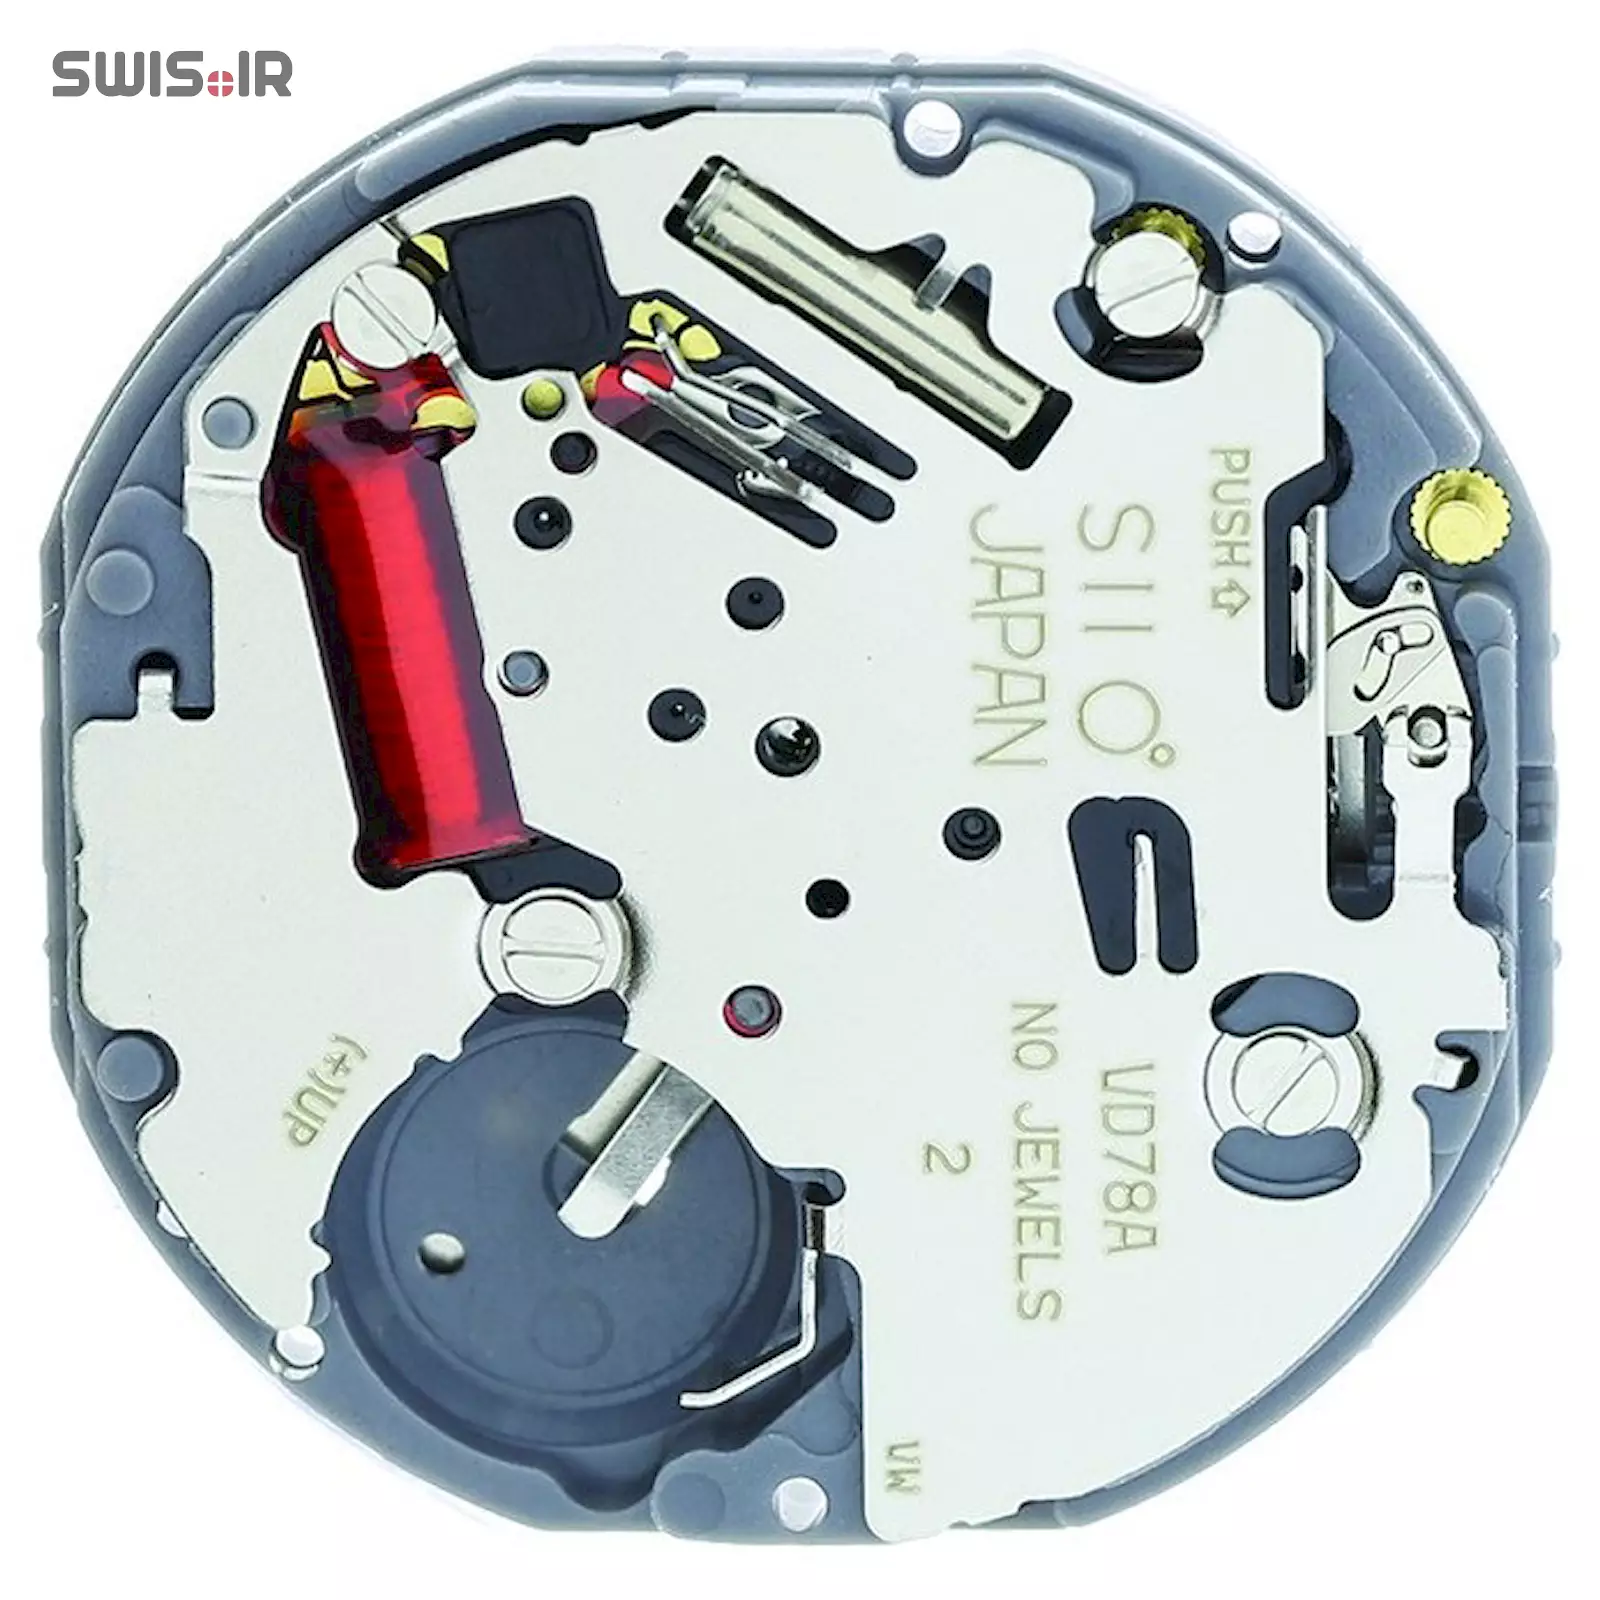 تصویر پشت موتور ساعت کالیبر VD78A-SII ساخت شرکت سیکو ـ اپسون ژاپن